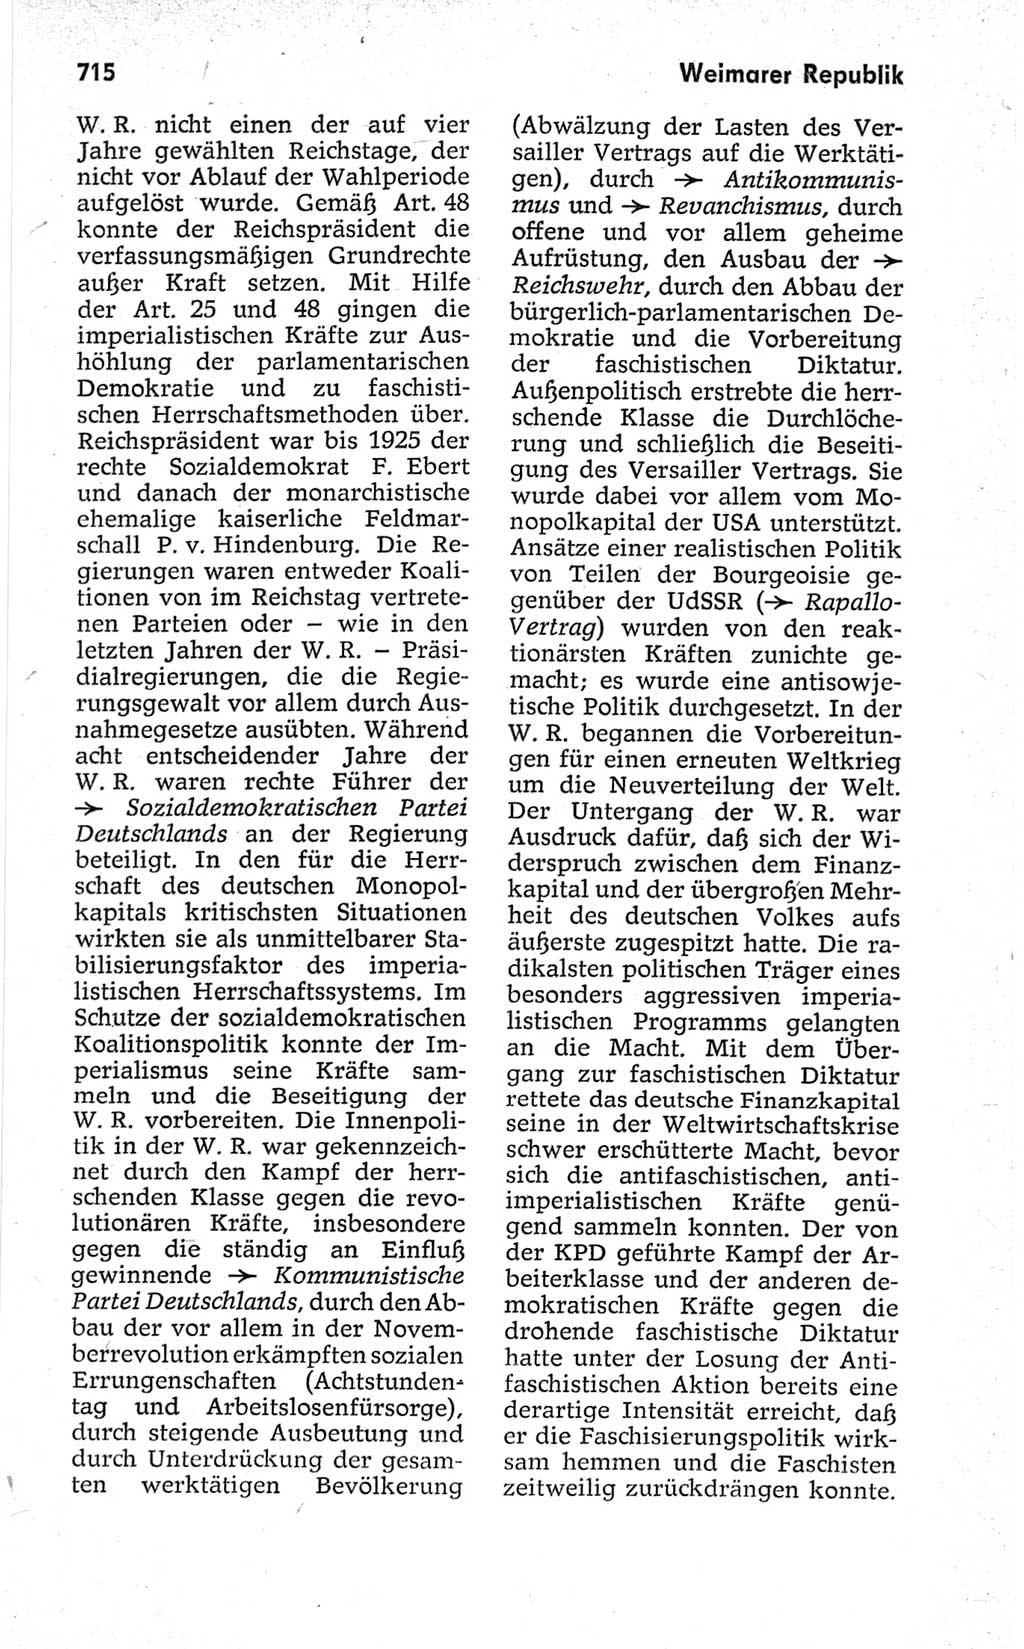 Kleines politisches Wörterbuch [Deutsche Demokratische Republik (DDR)] 1967, Seite 715 (Kl. pol. Wb. DDR 1967, S. 715)